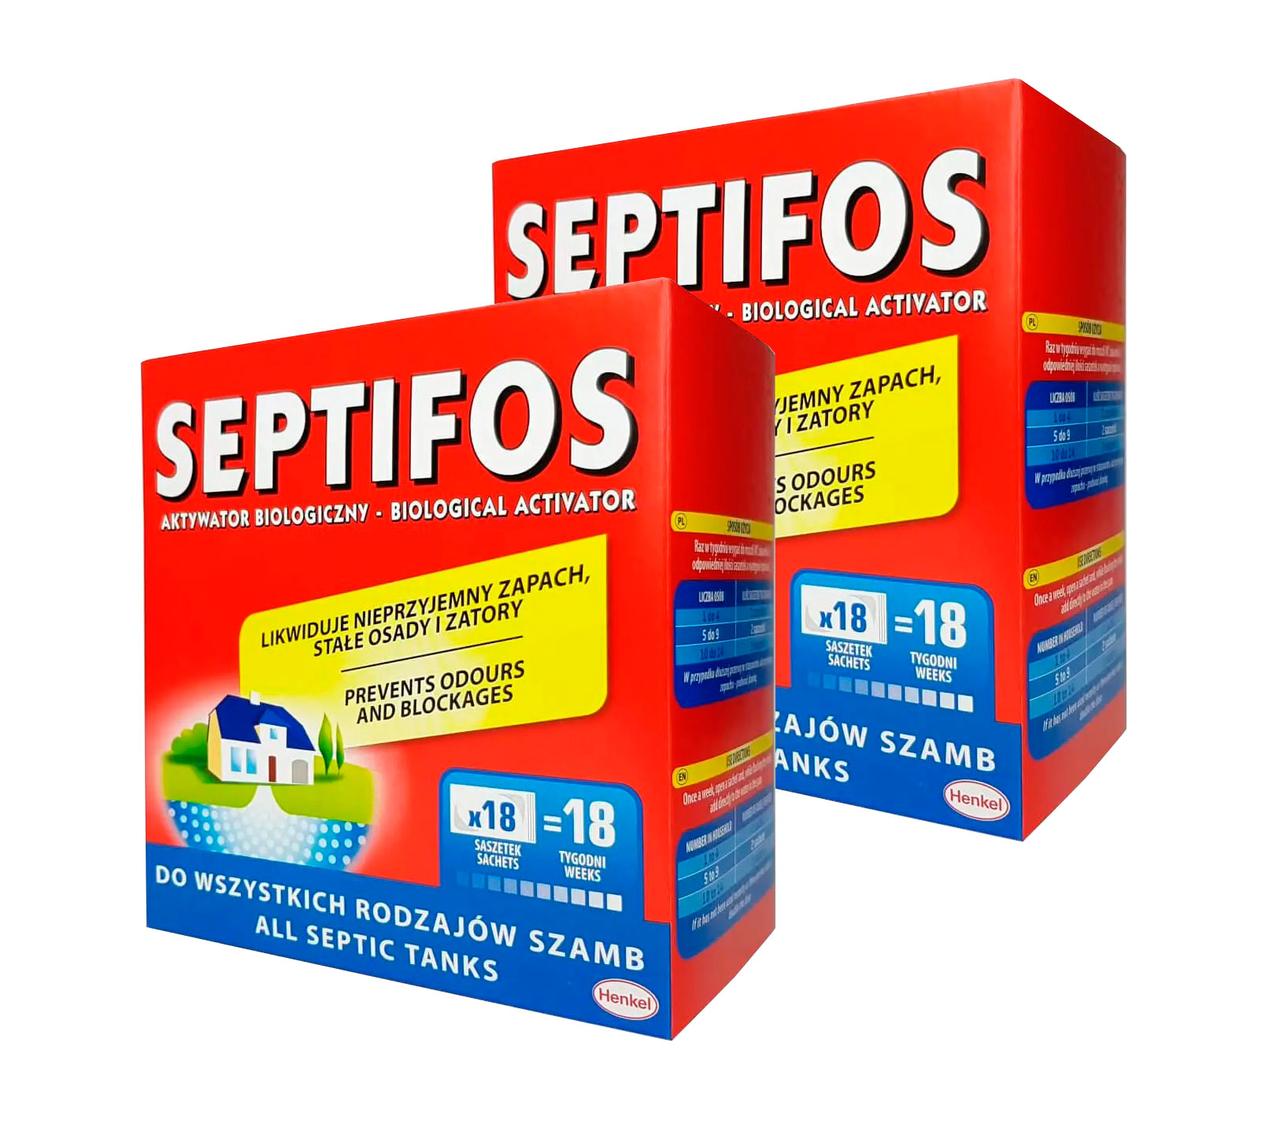 Біоактиватор для септика Септифос Septifos 1296г. 36 пакетів/порцій, (дві пачки по 18 пак.)